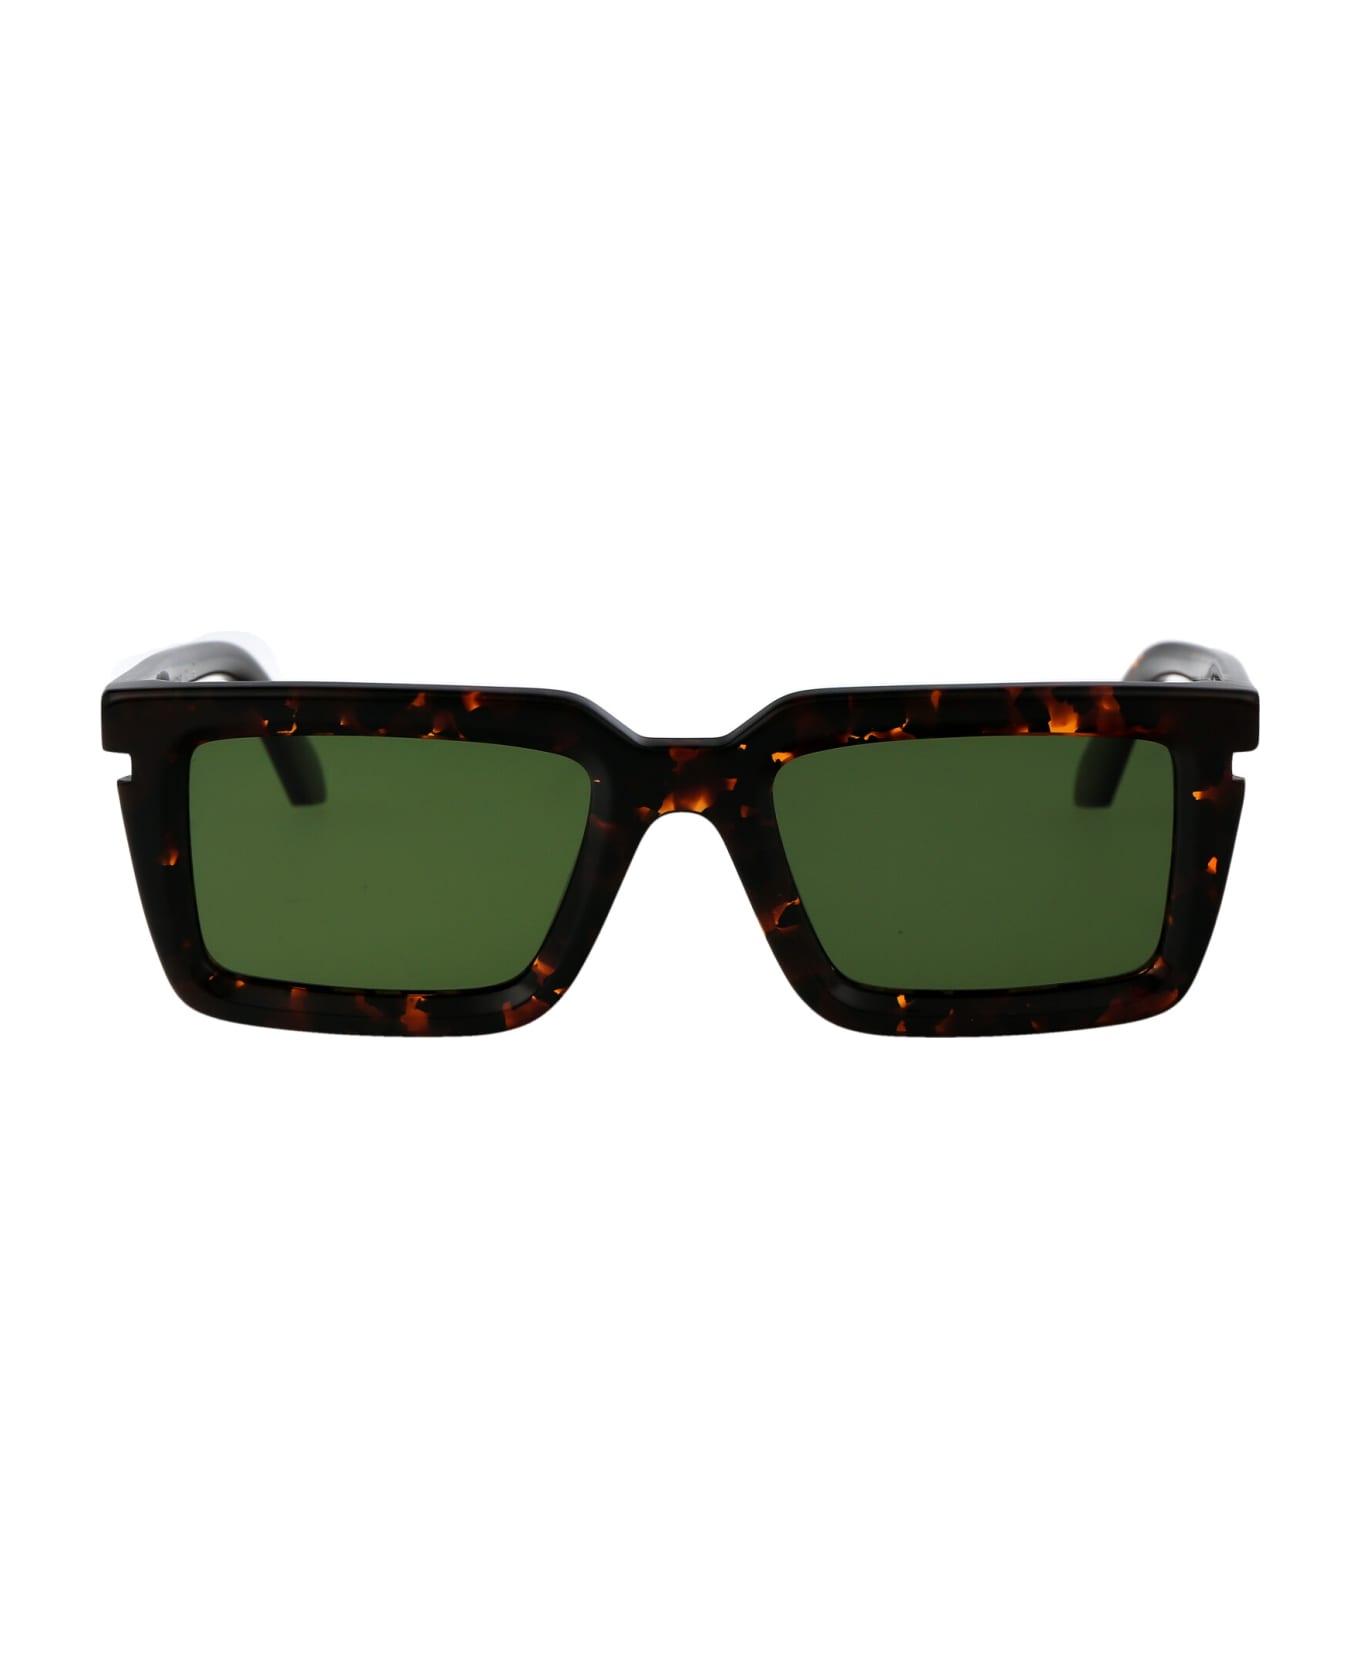 Off-White Tucson Sunglasses - 6055 HAVANA